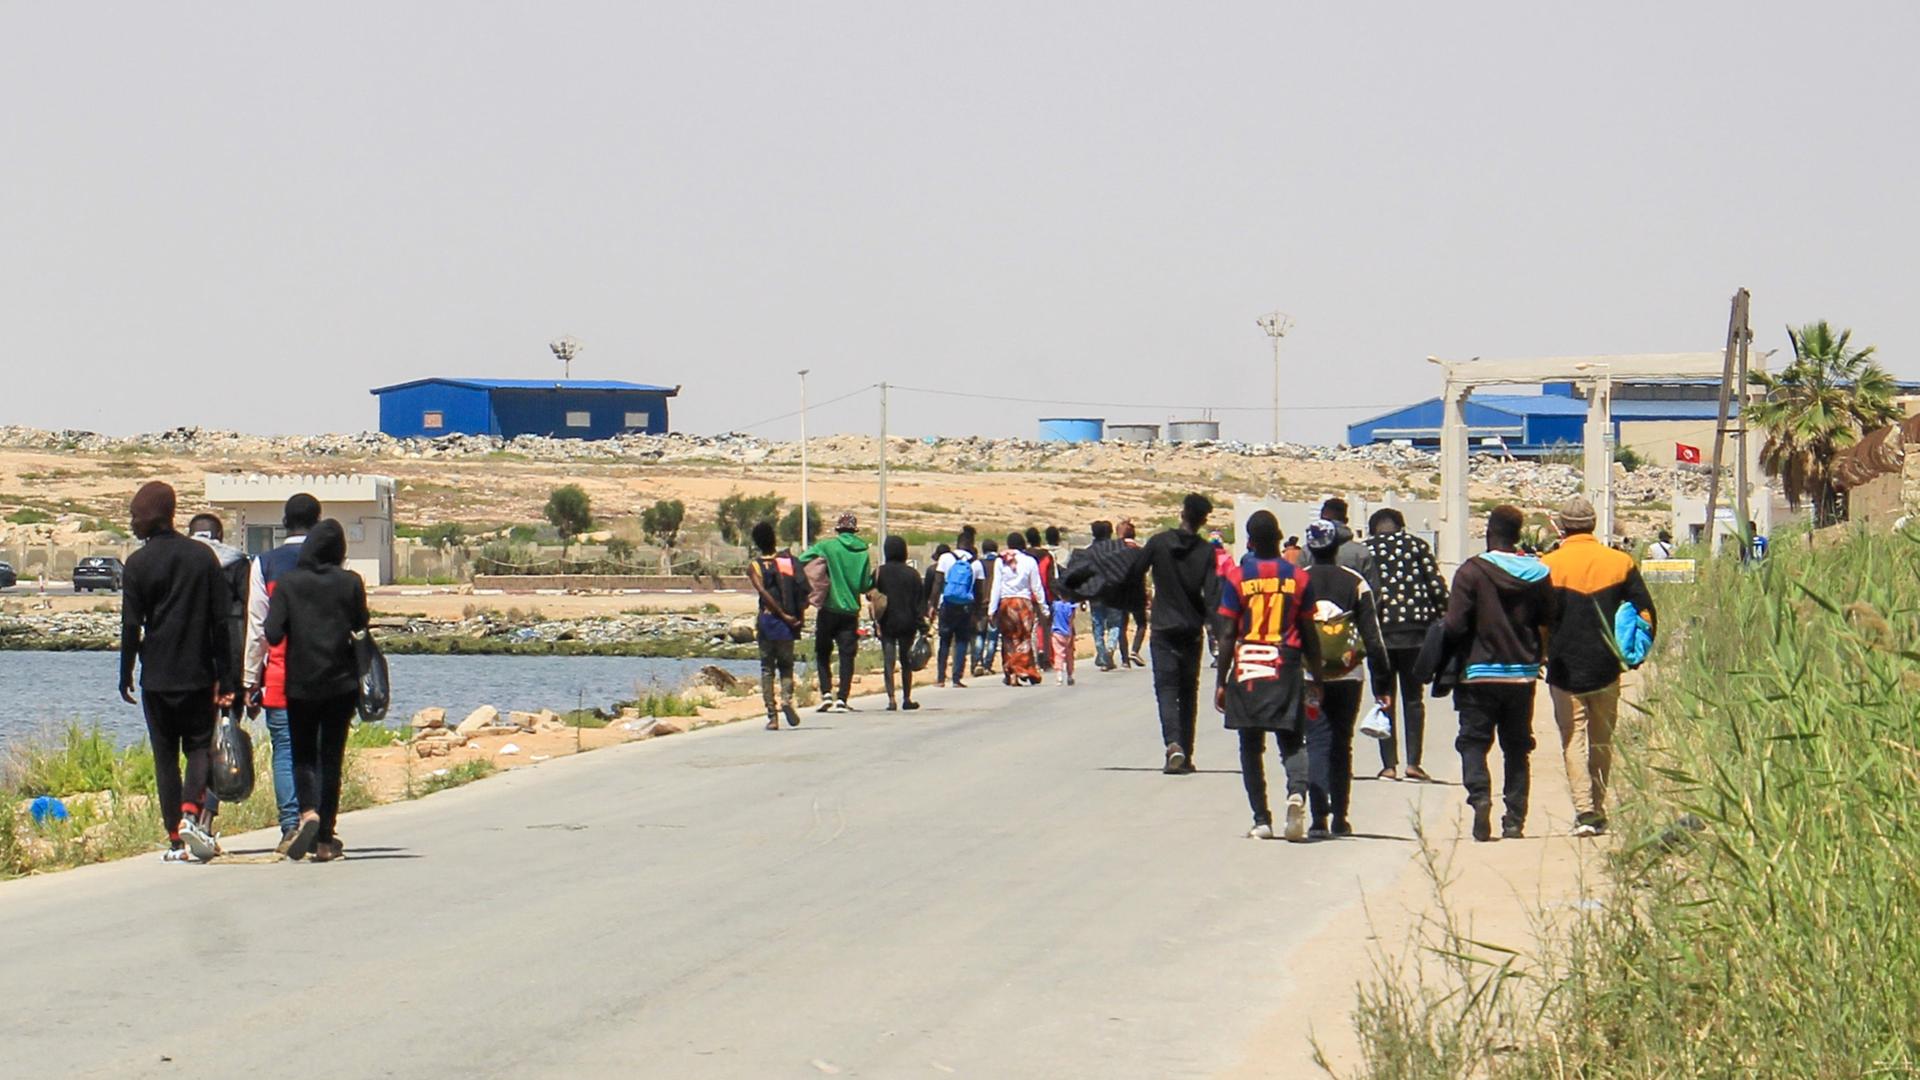 Migranten, die von tunesischen Einsatzkräften auf dem Meer aufgespürt wurden, gehen eine Strasse hinunter, nachdem sie am Hafen zurück an Land gelassen wurden.